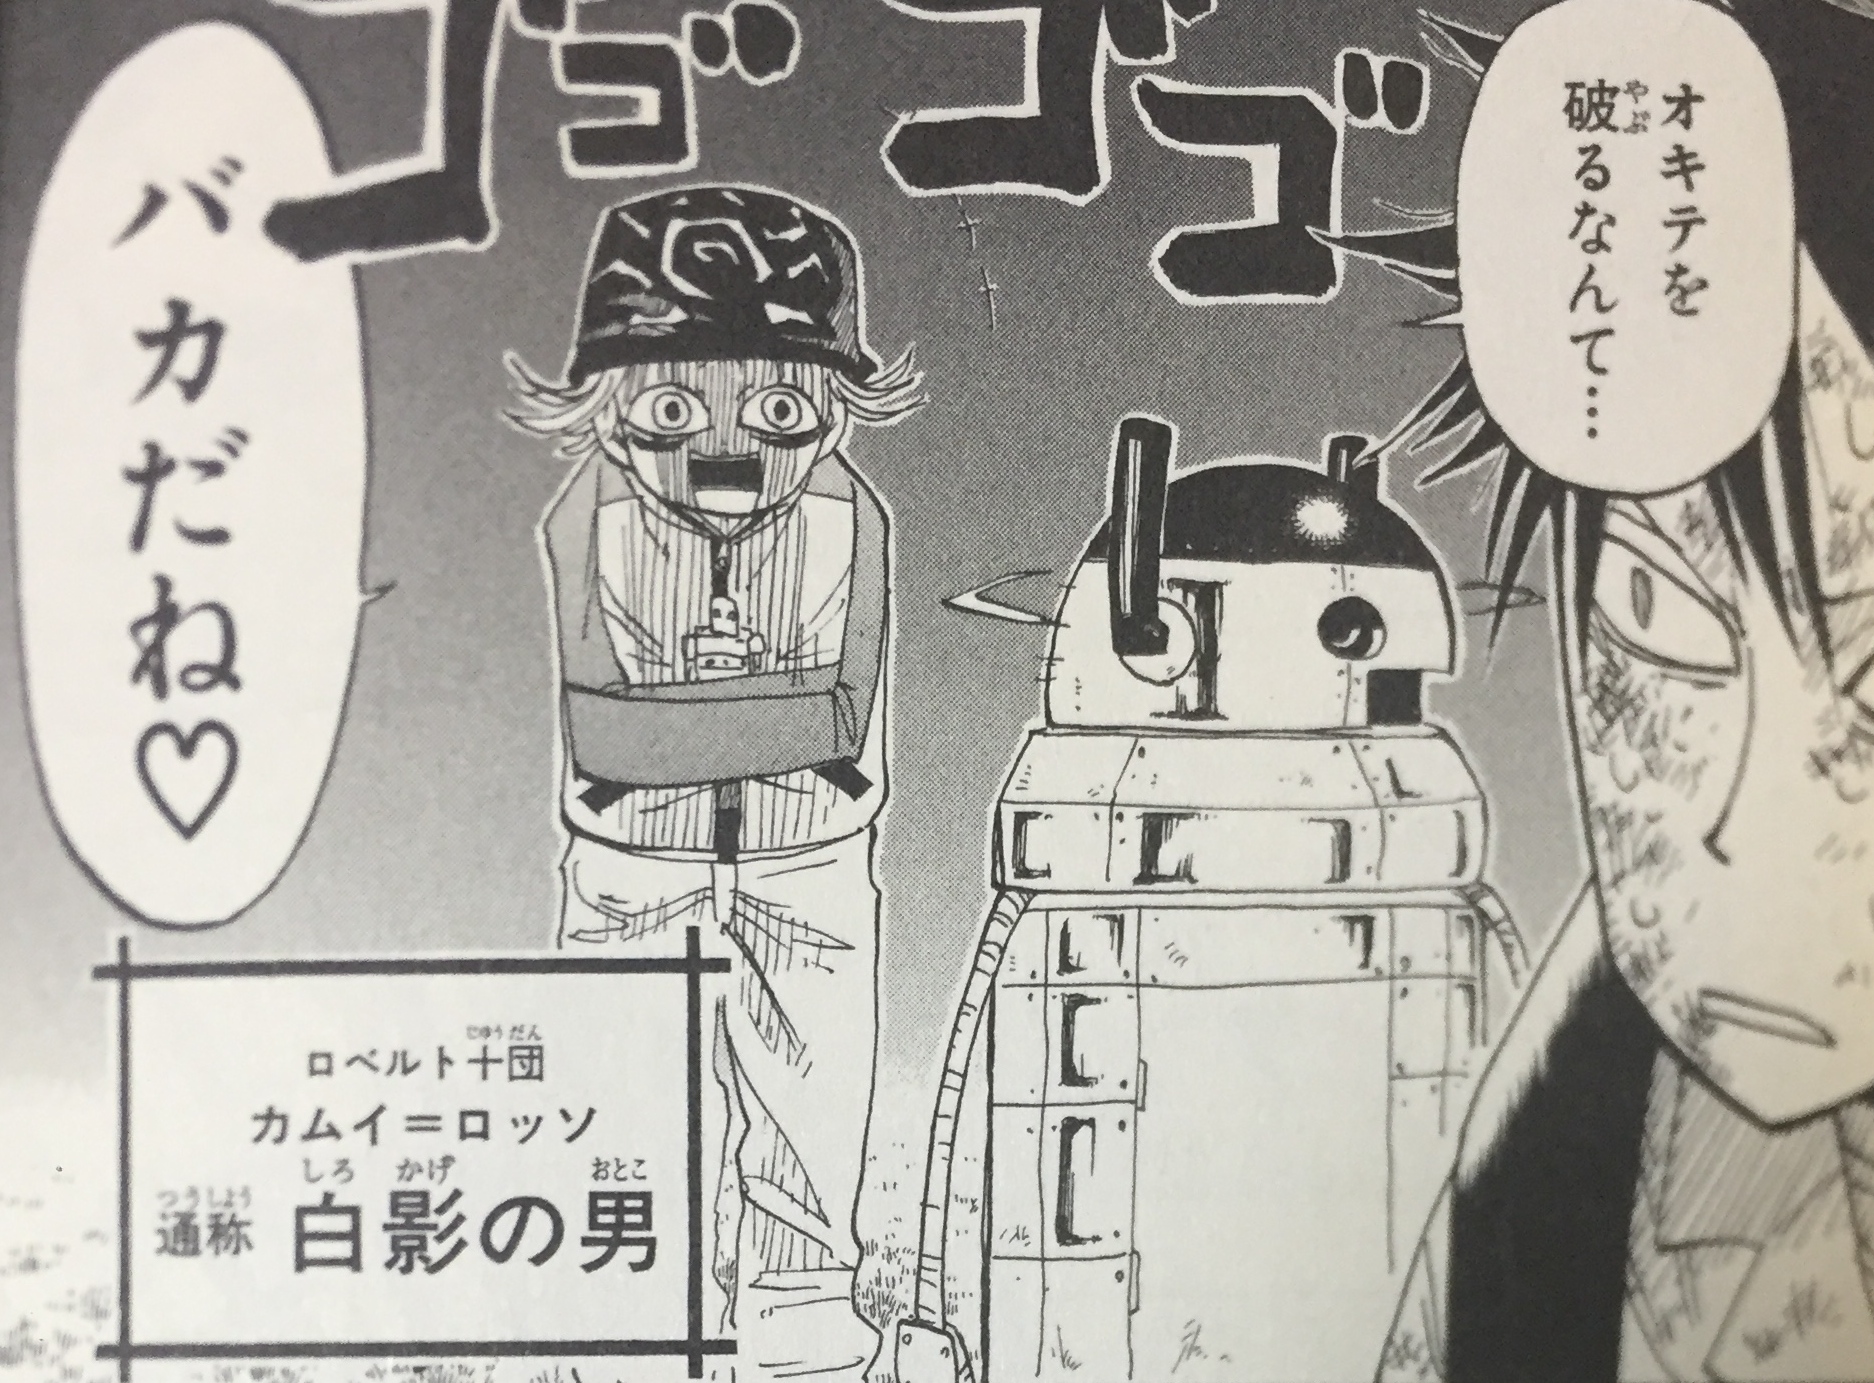 うえきの法則 カムイ ロッソの強さ考察 影を鉄人形 ロボット に変える能力について バトワン